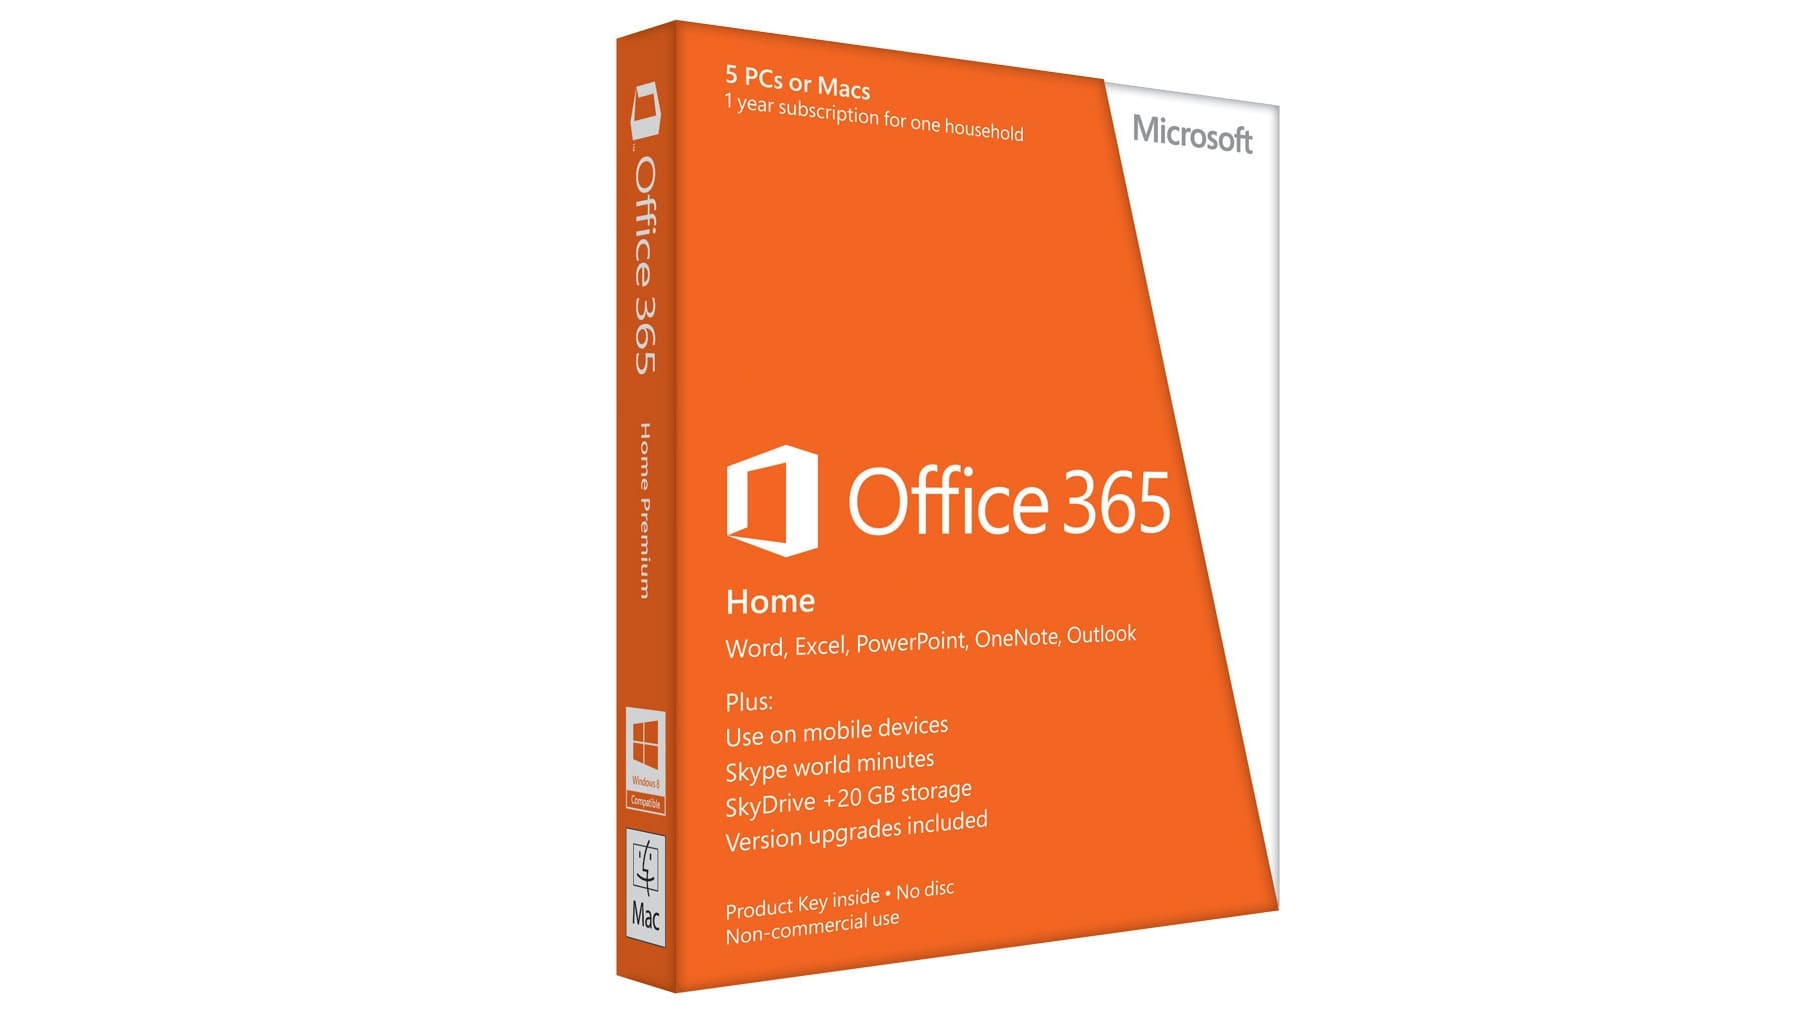 Office Microsoft 365 Personal – Phần mềm bảo vệ máy tính, tối ưu cho công việc